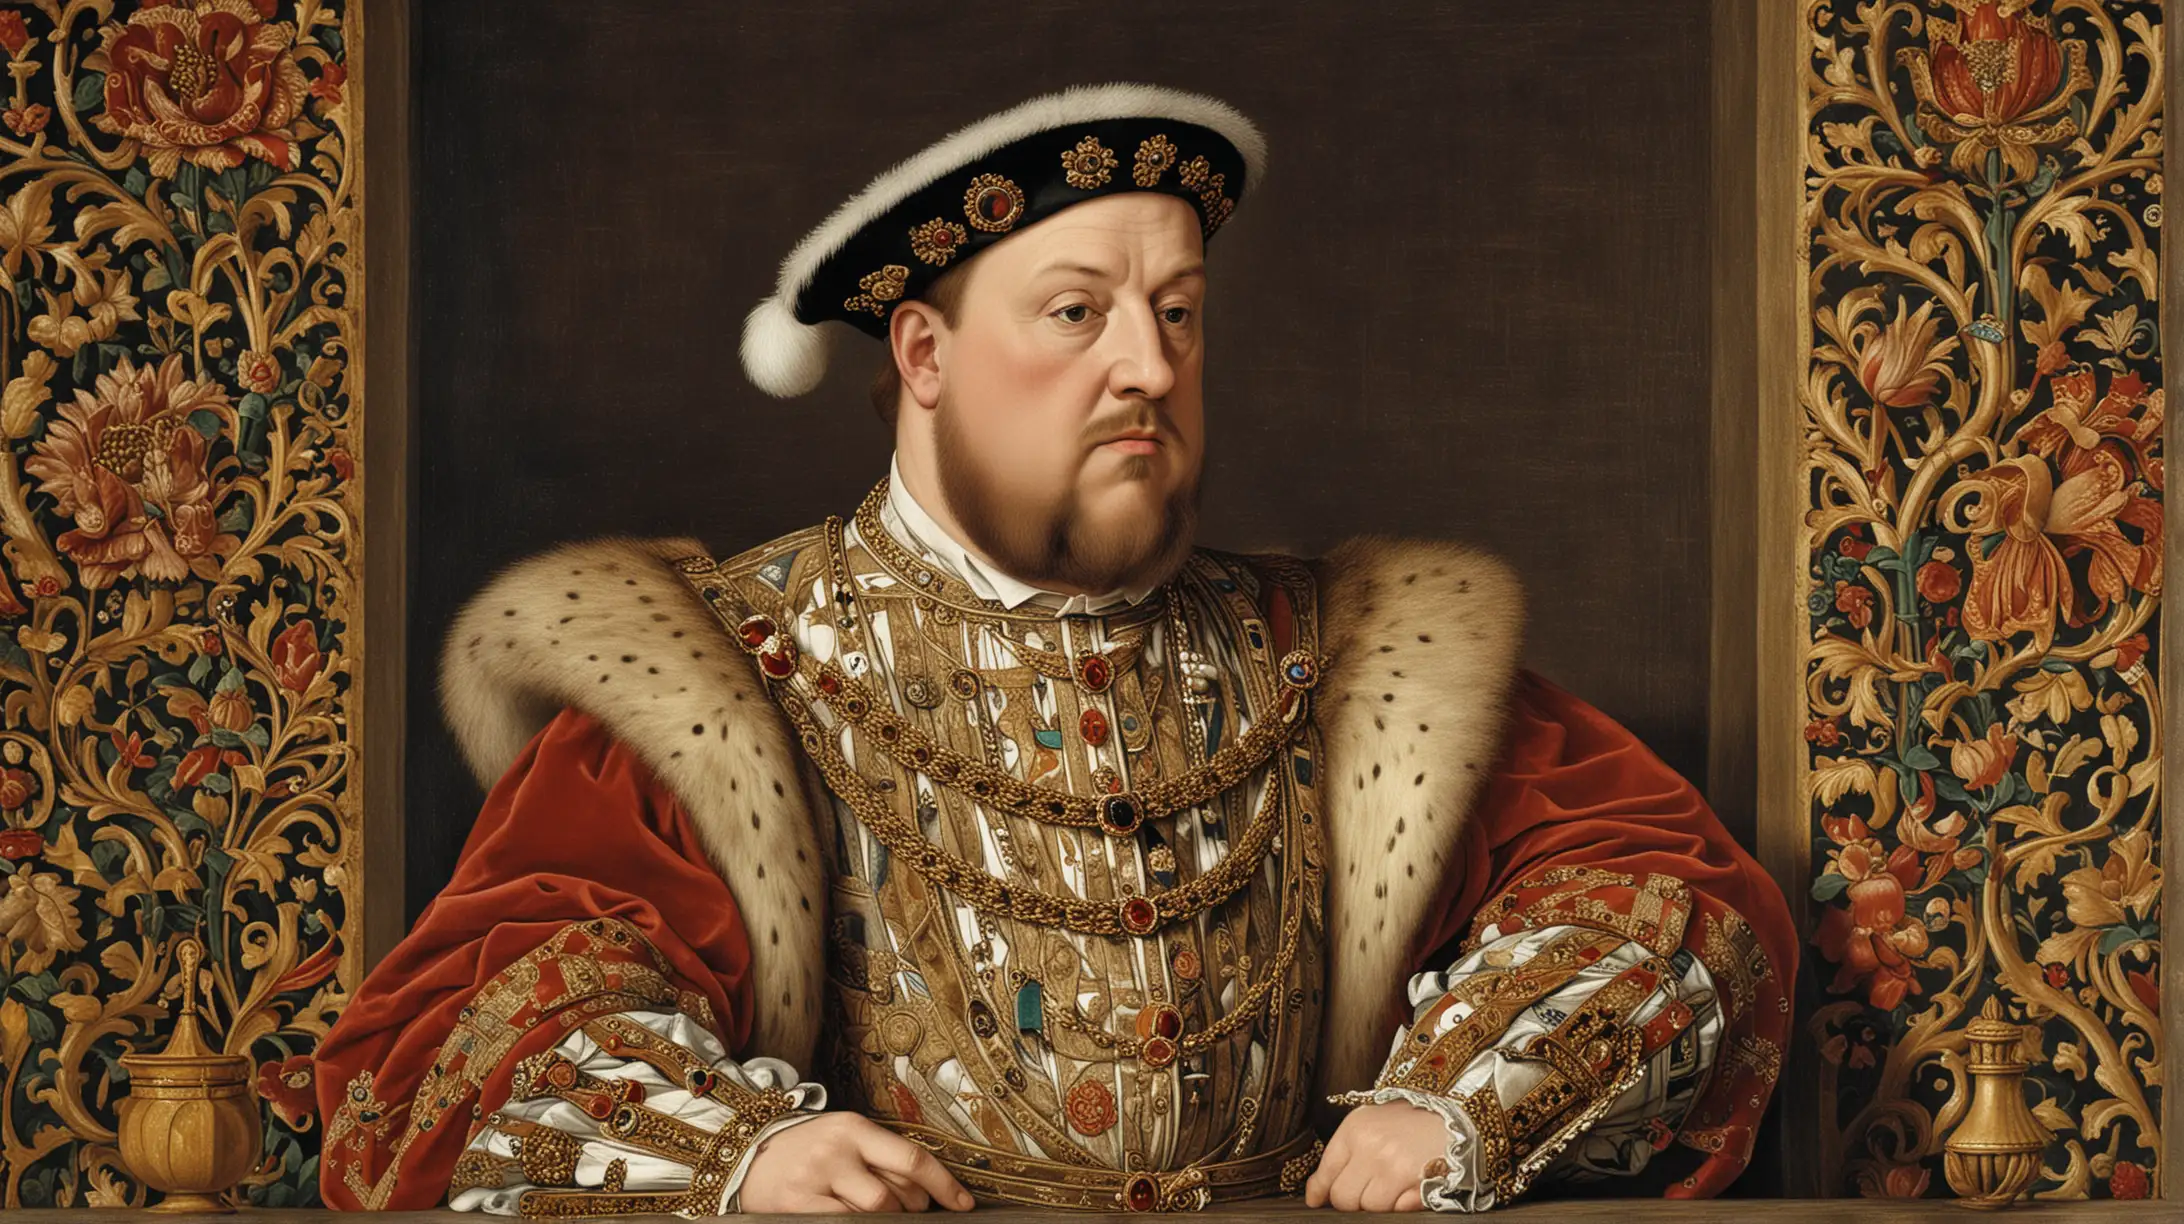  SIGLO XV REY Enrique VIII    amaba el arte 